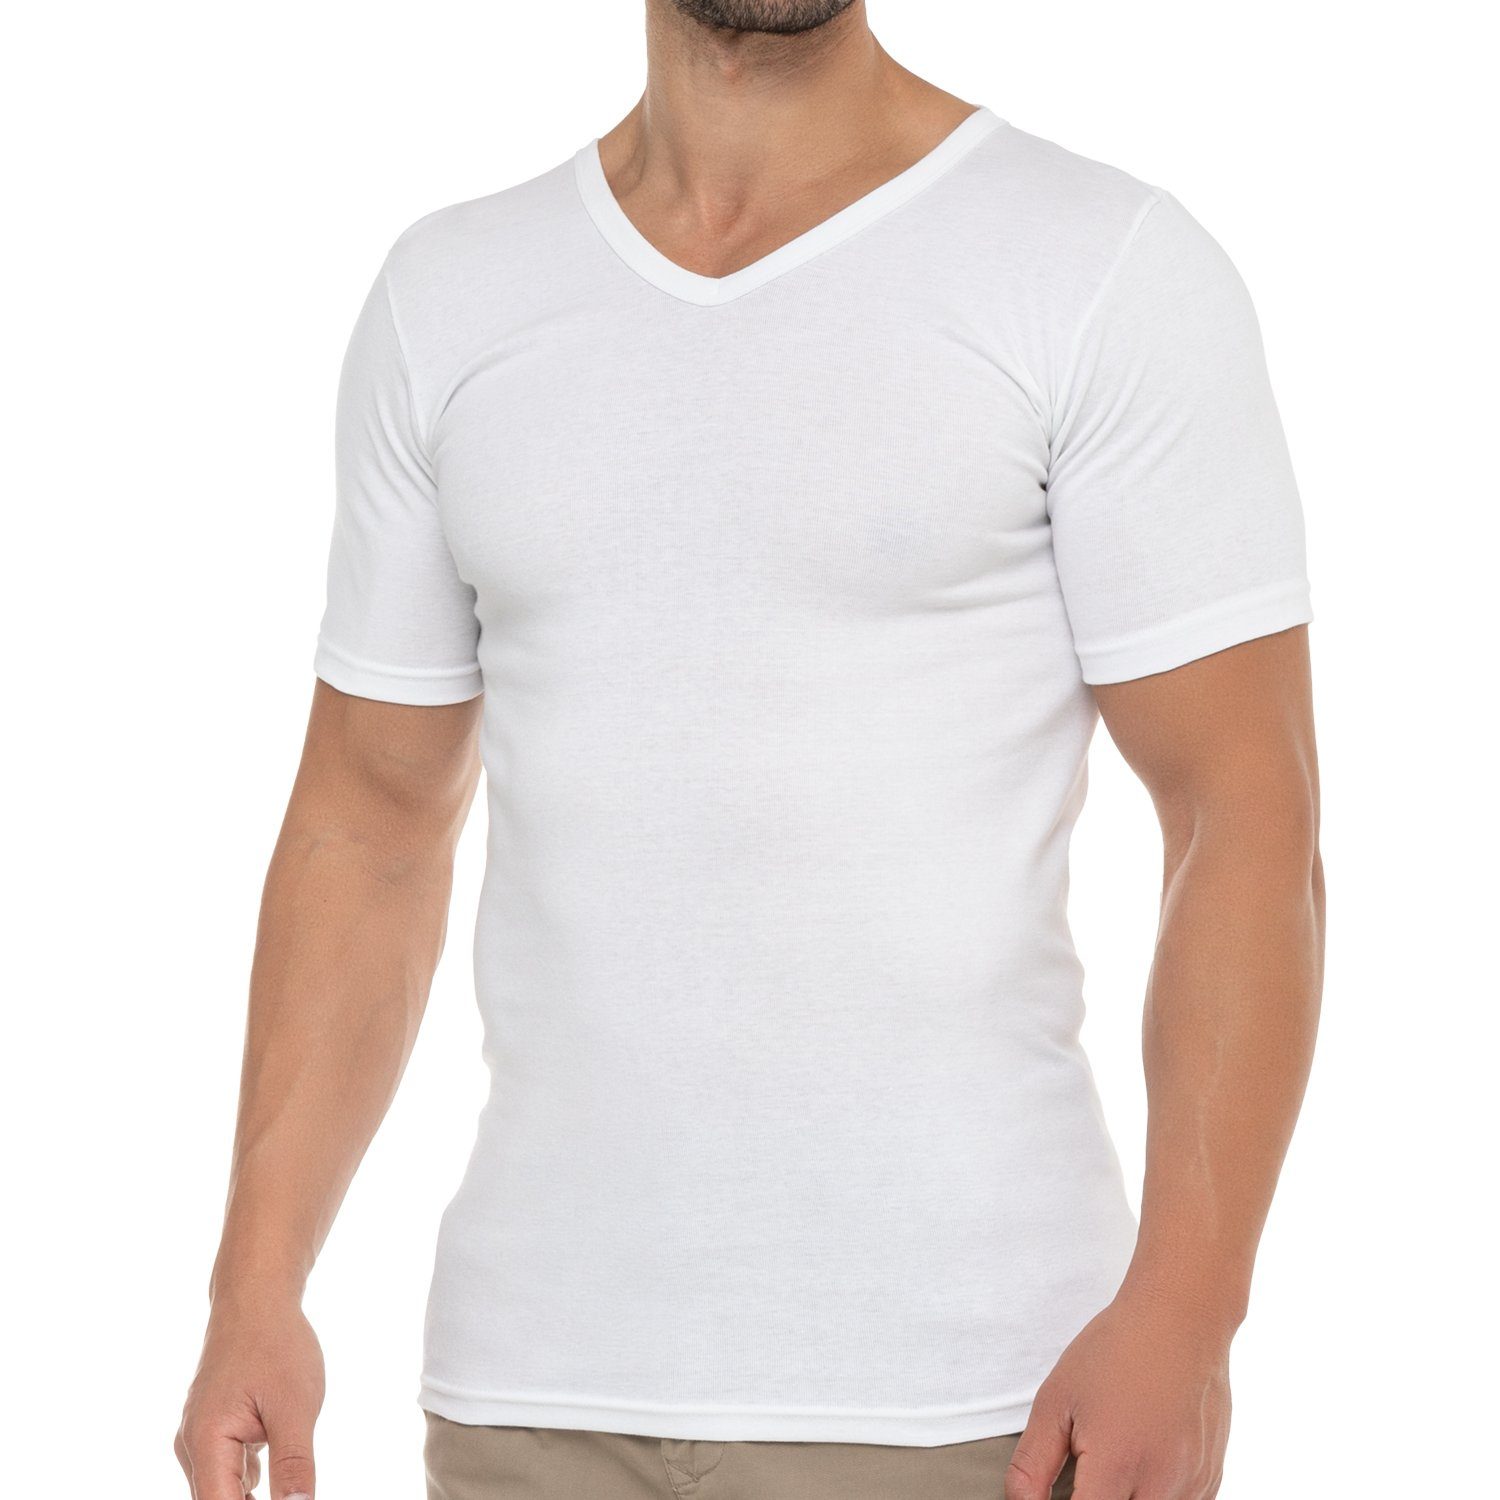 celodoro Kurzarmshirt Herren Business T-Shirt V-Neck Feinripp Baumwolle (1er/3er) 1 x Weiss